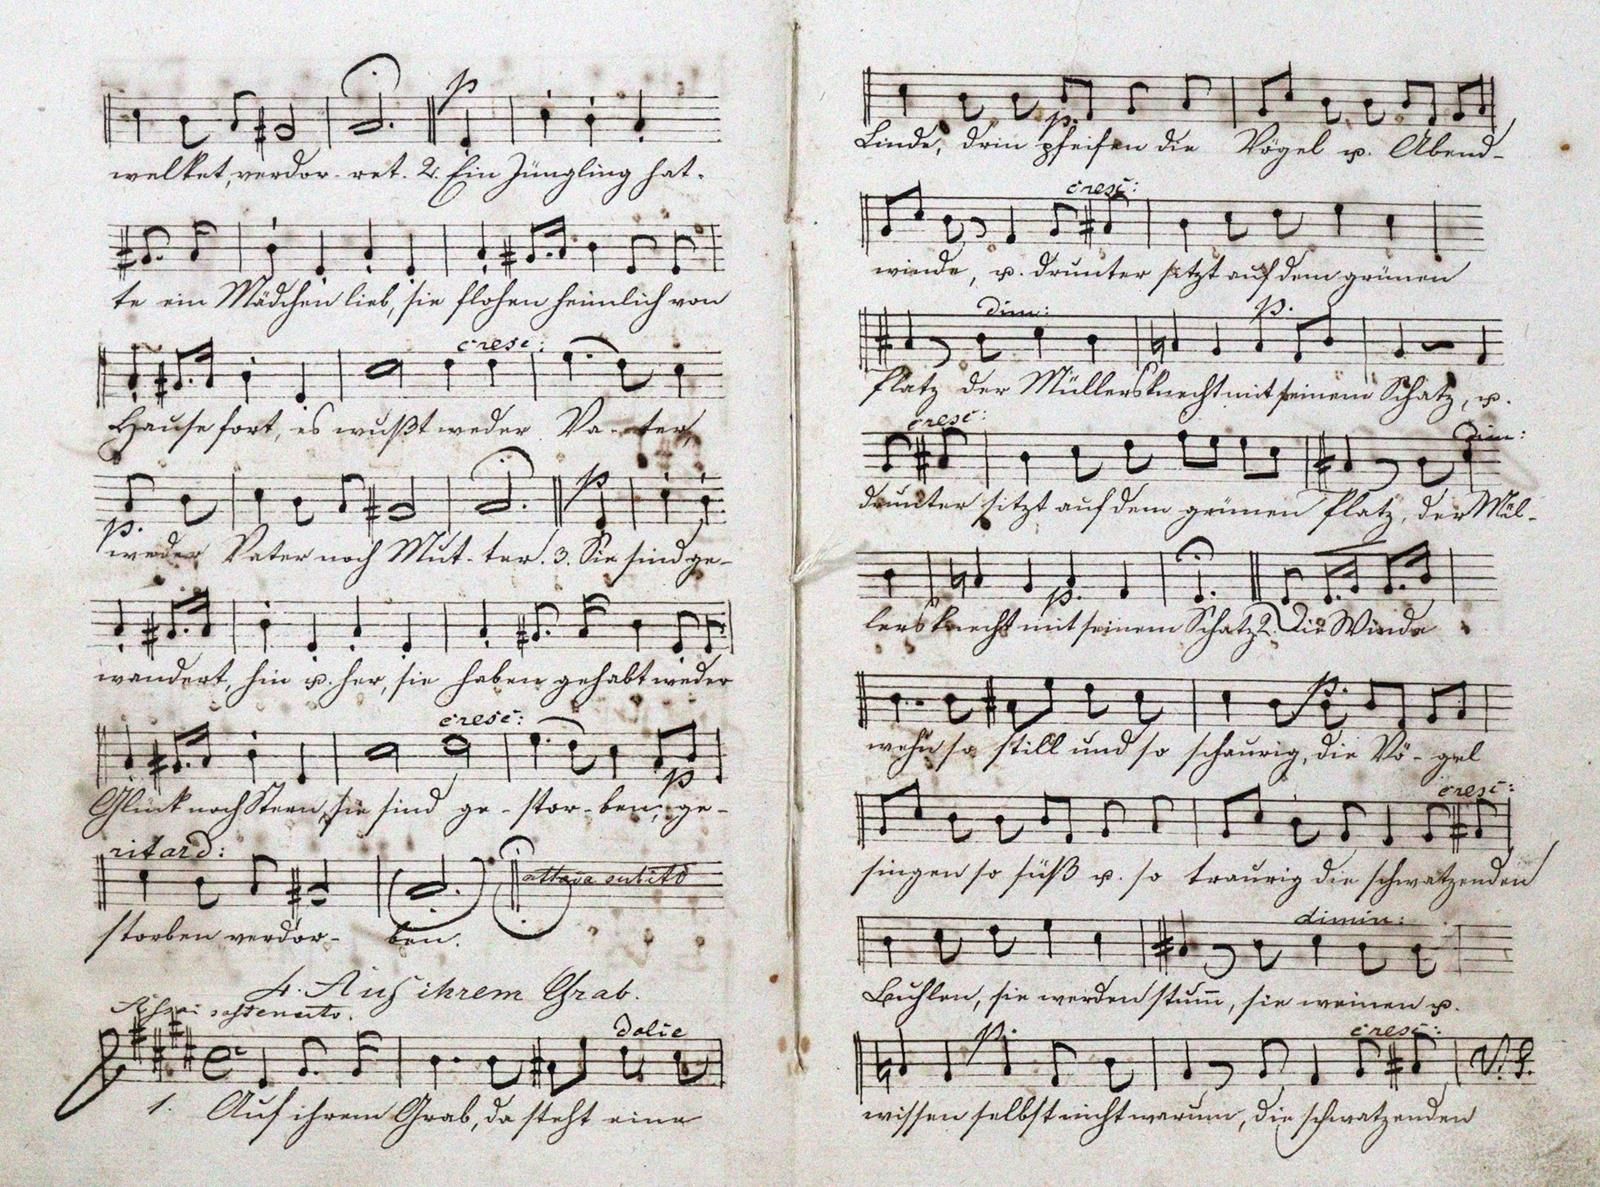 Papst,W. Canzoni per soprano, contralto, tenore e basso, composte da Felix Mende&hellip;